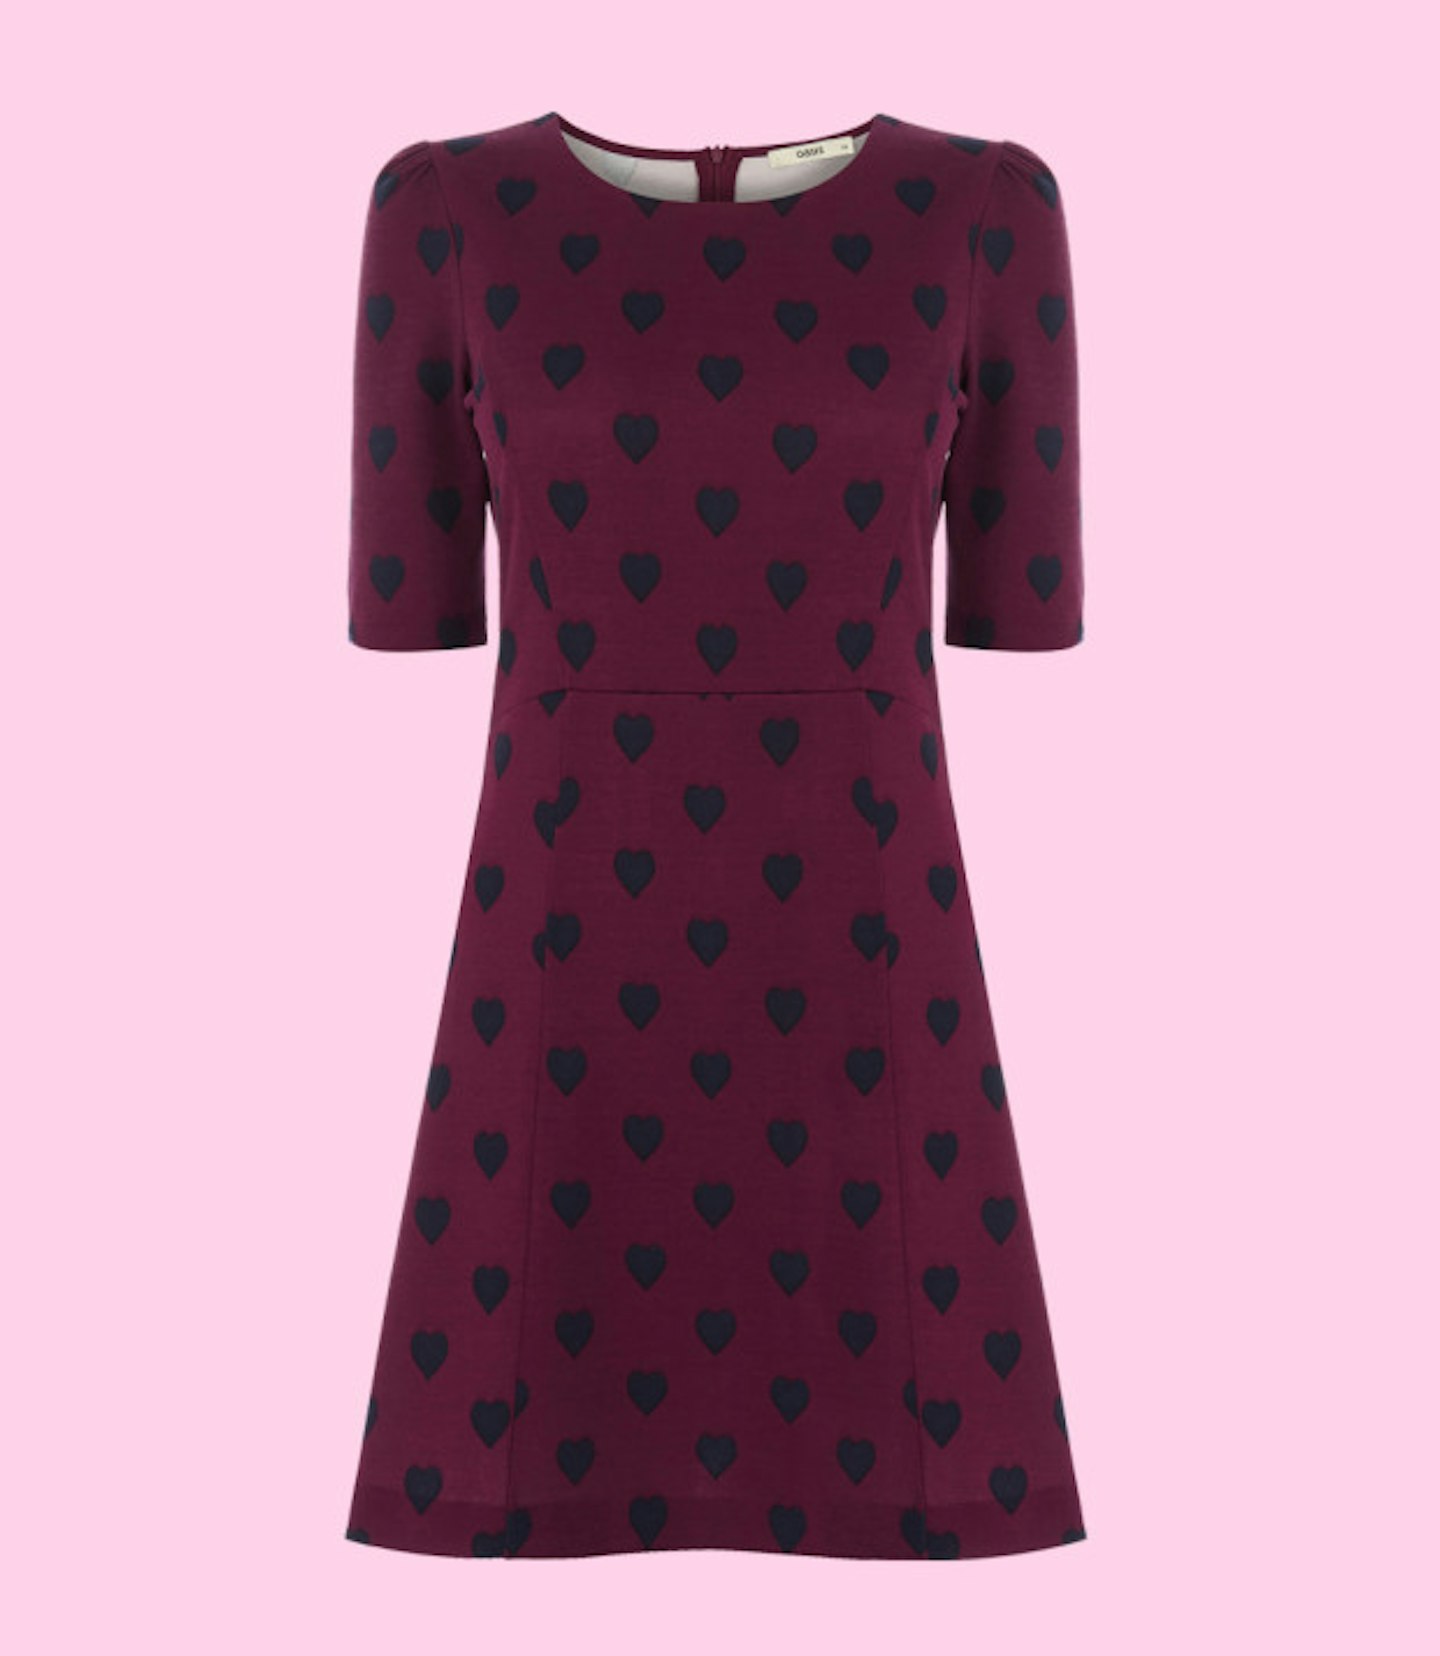 Burgundy heart print dress